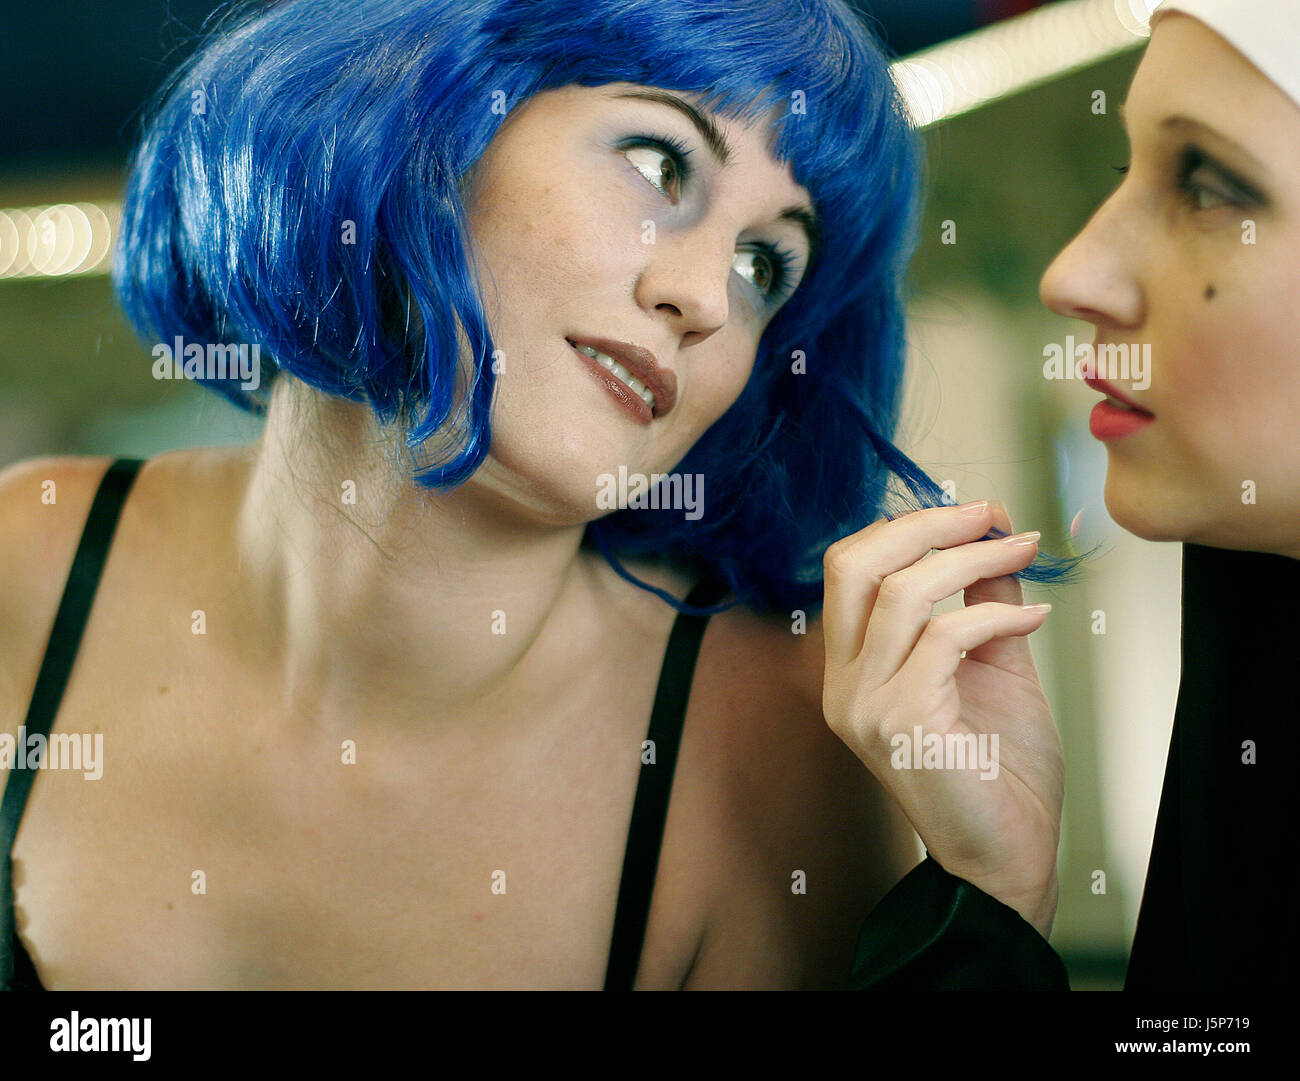 blue female feeling portrait nostalgia longing relaxed hairs advise wig Stock Photo